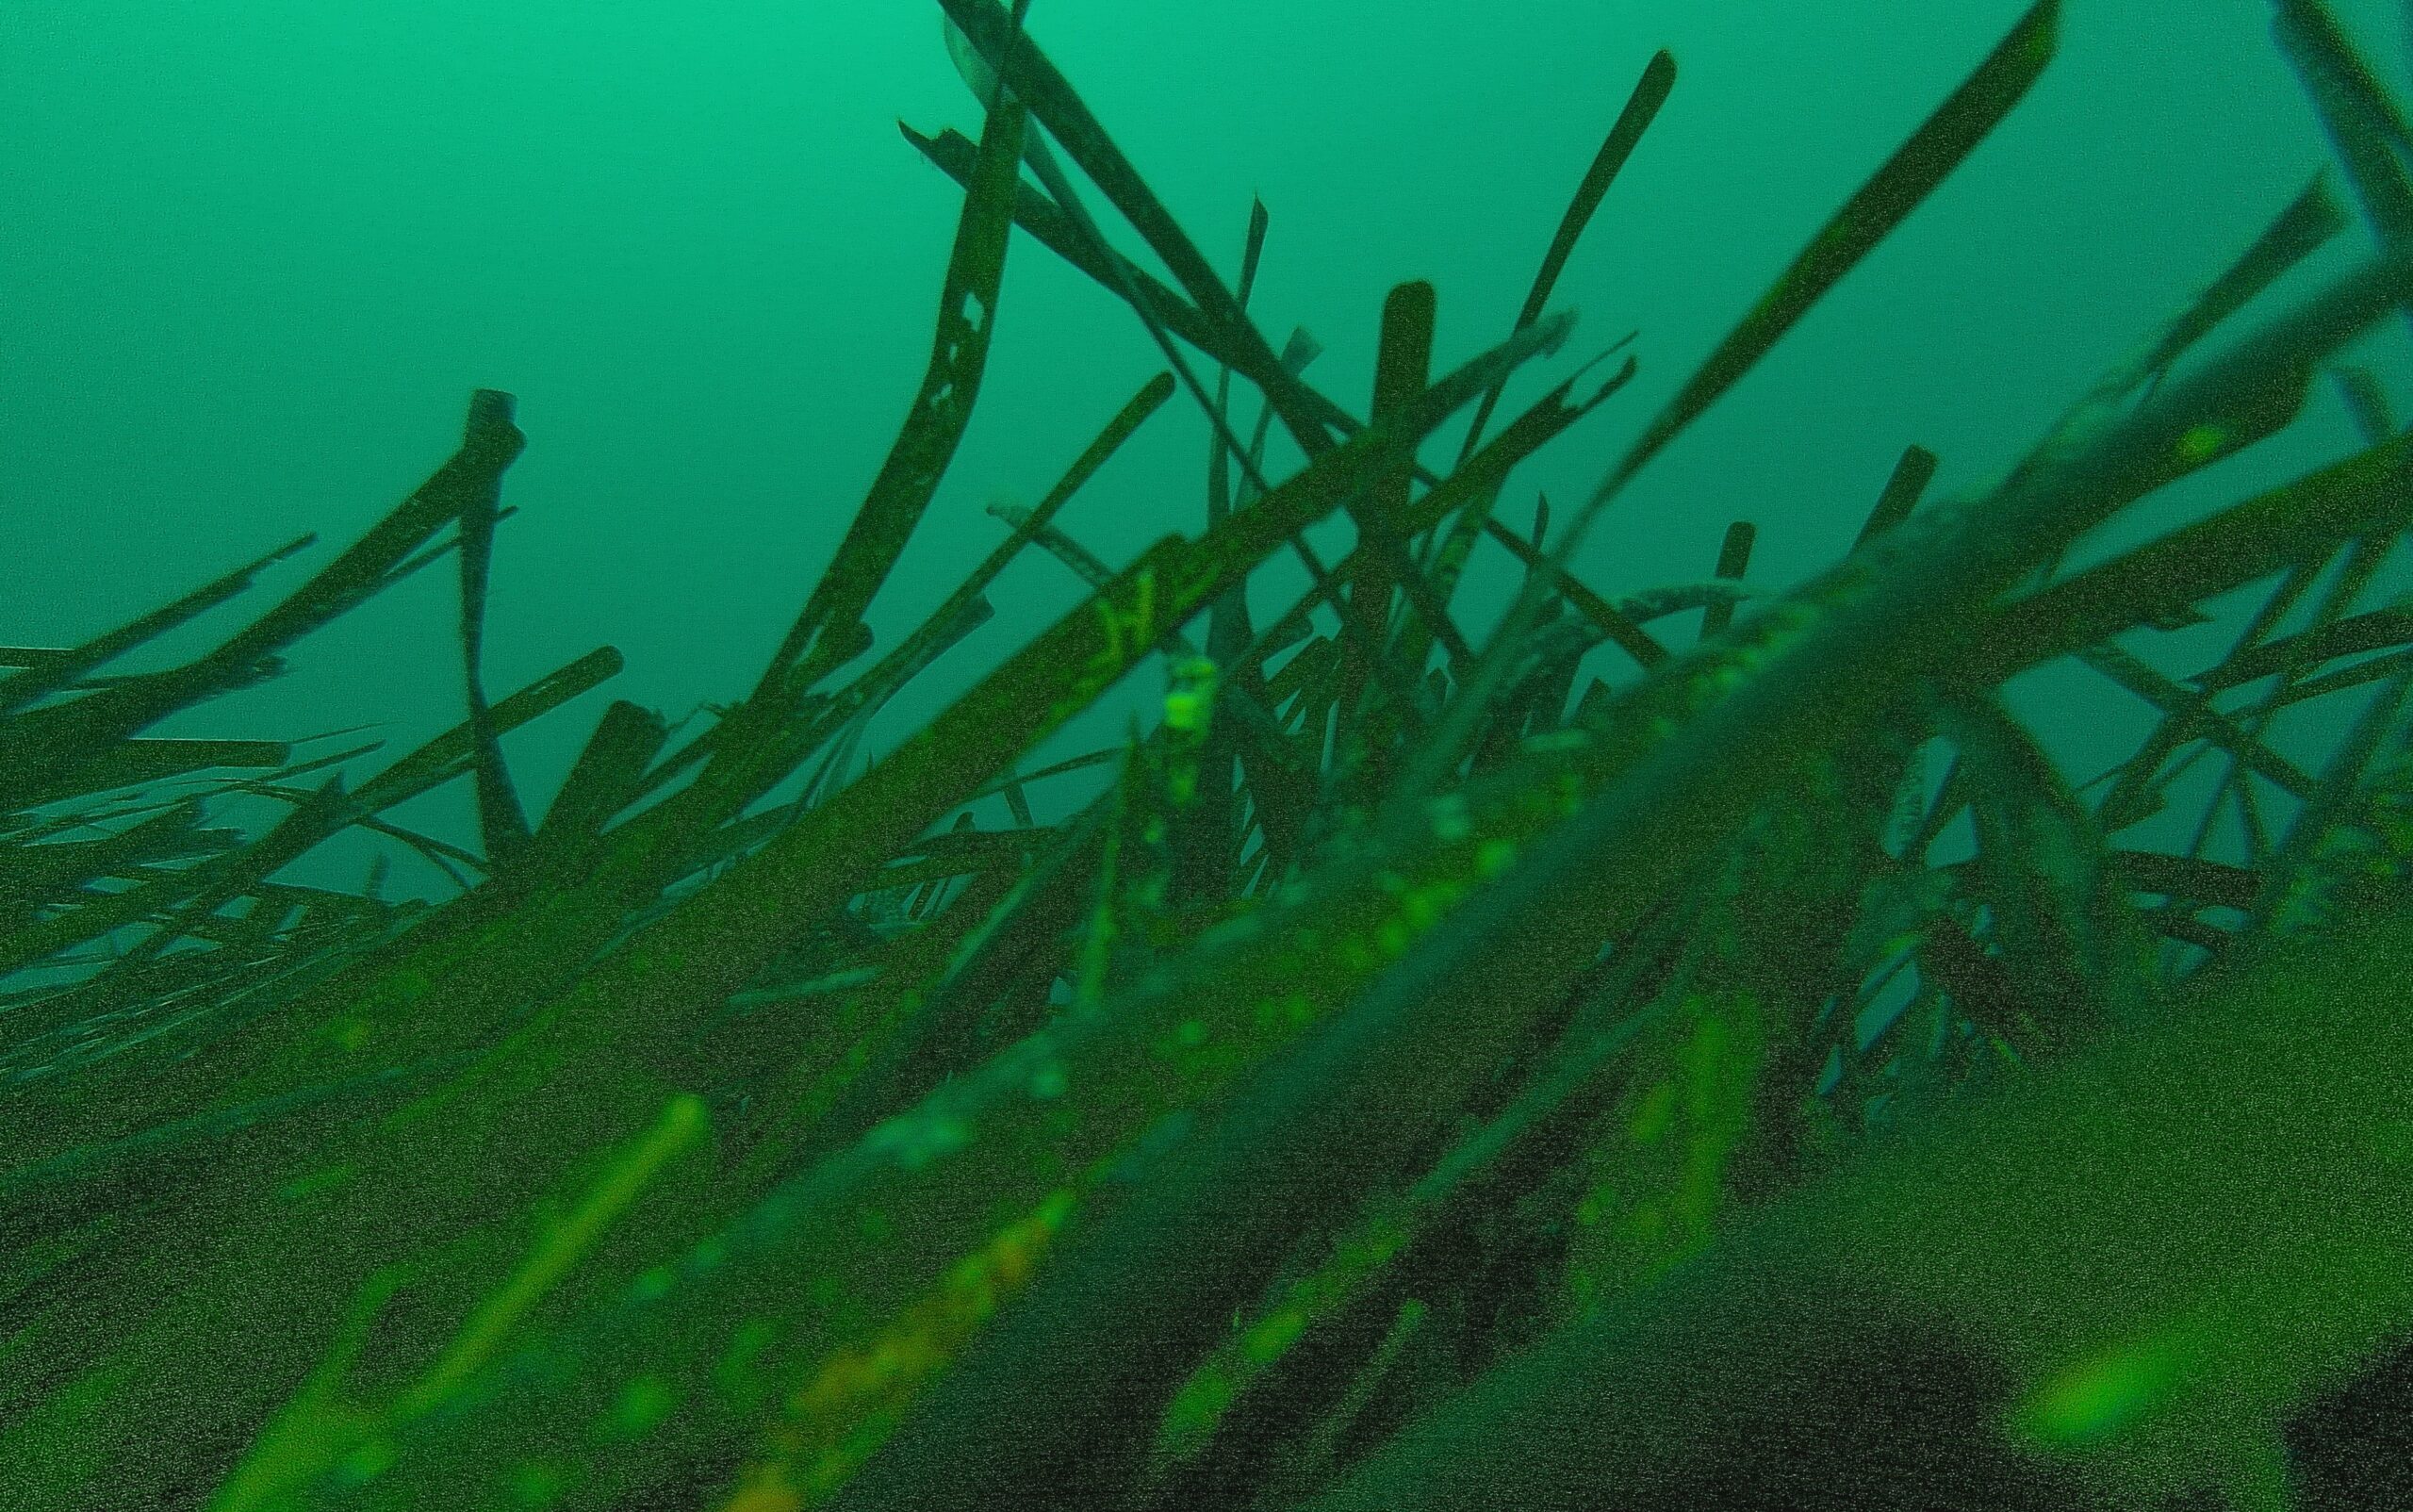 Le lunghe foglie nastriformi di Posidonia oceanica. [Fotografia scattata da Elisabetta Cretella mediante un ROV subacqueo ad una profondità di circa 12 metri].